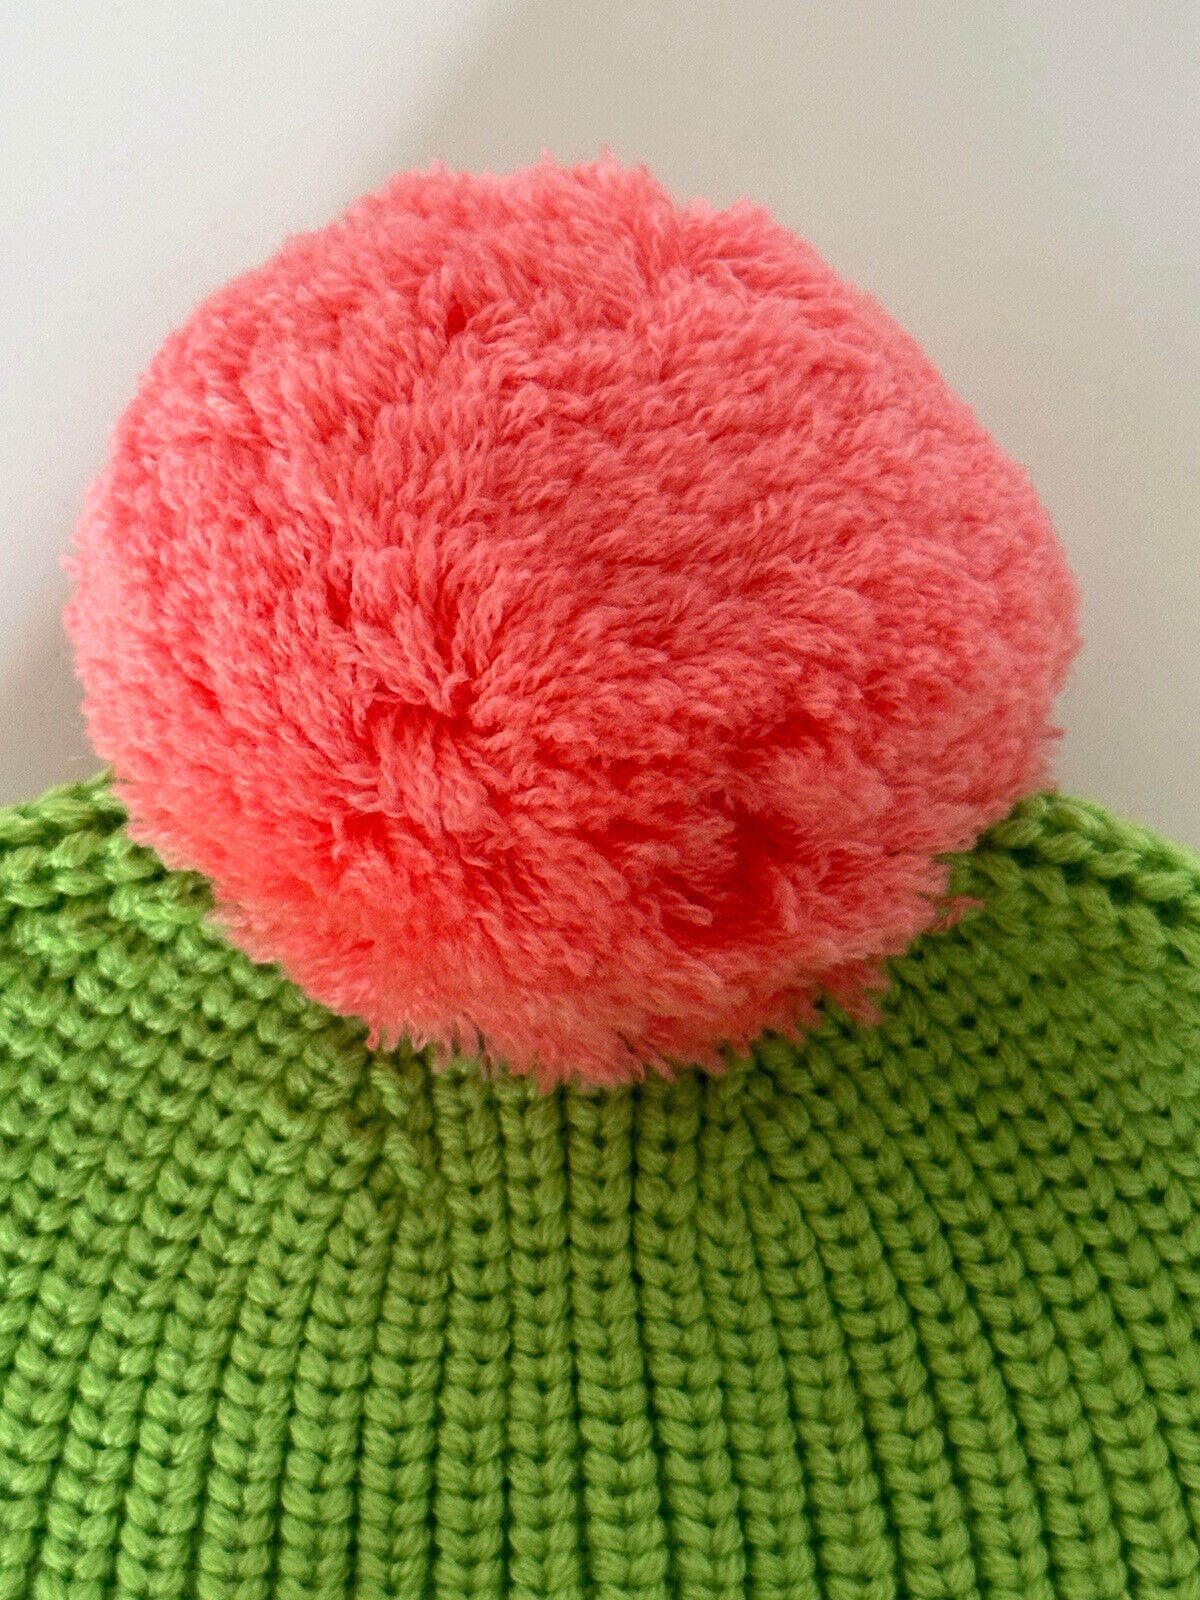 NWT $495 Versace Knit Beanie Шерстяная зеленая шапка с вышивкой логотипа 1001181 Италия 